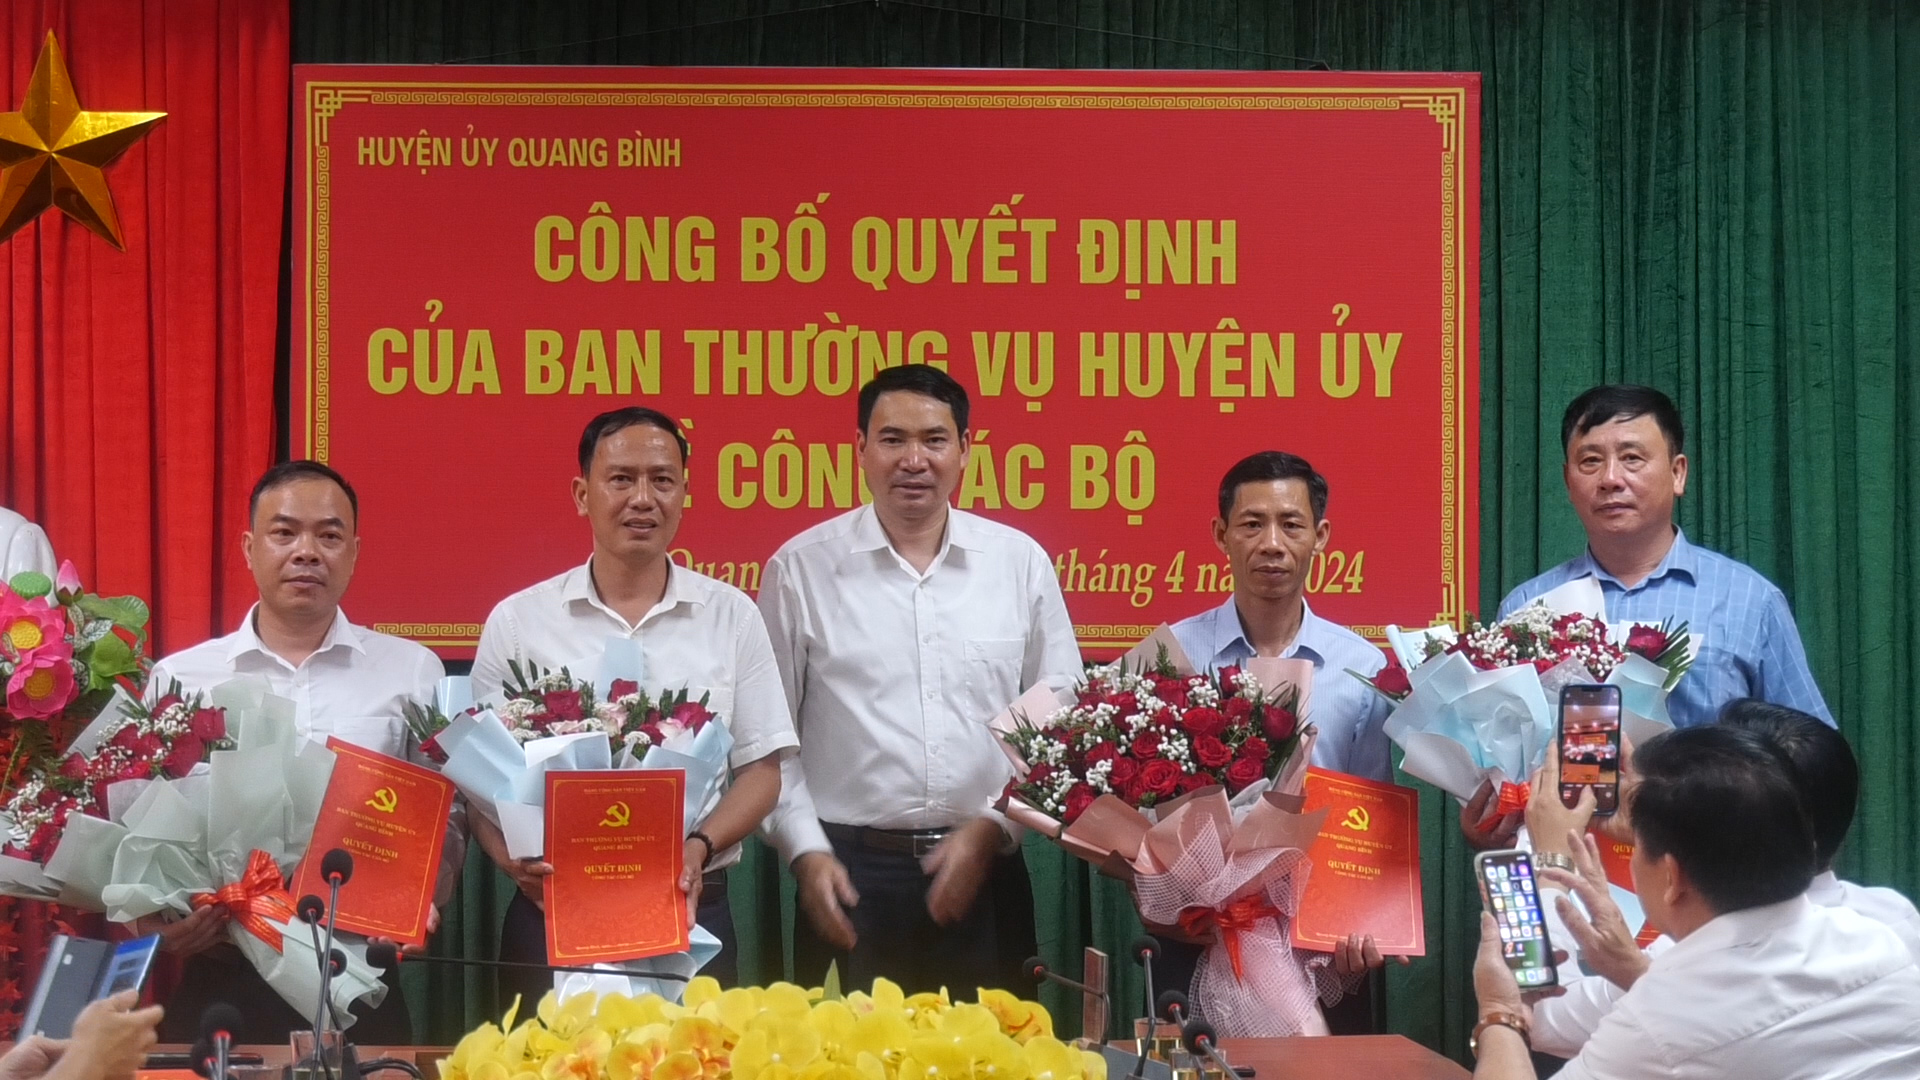 Huyện ủy Quang Bình tổ chức Lễ công bố các quyết định về công tác cán bộ